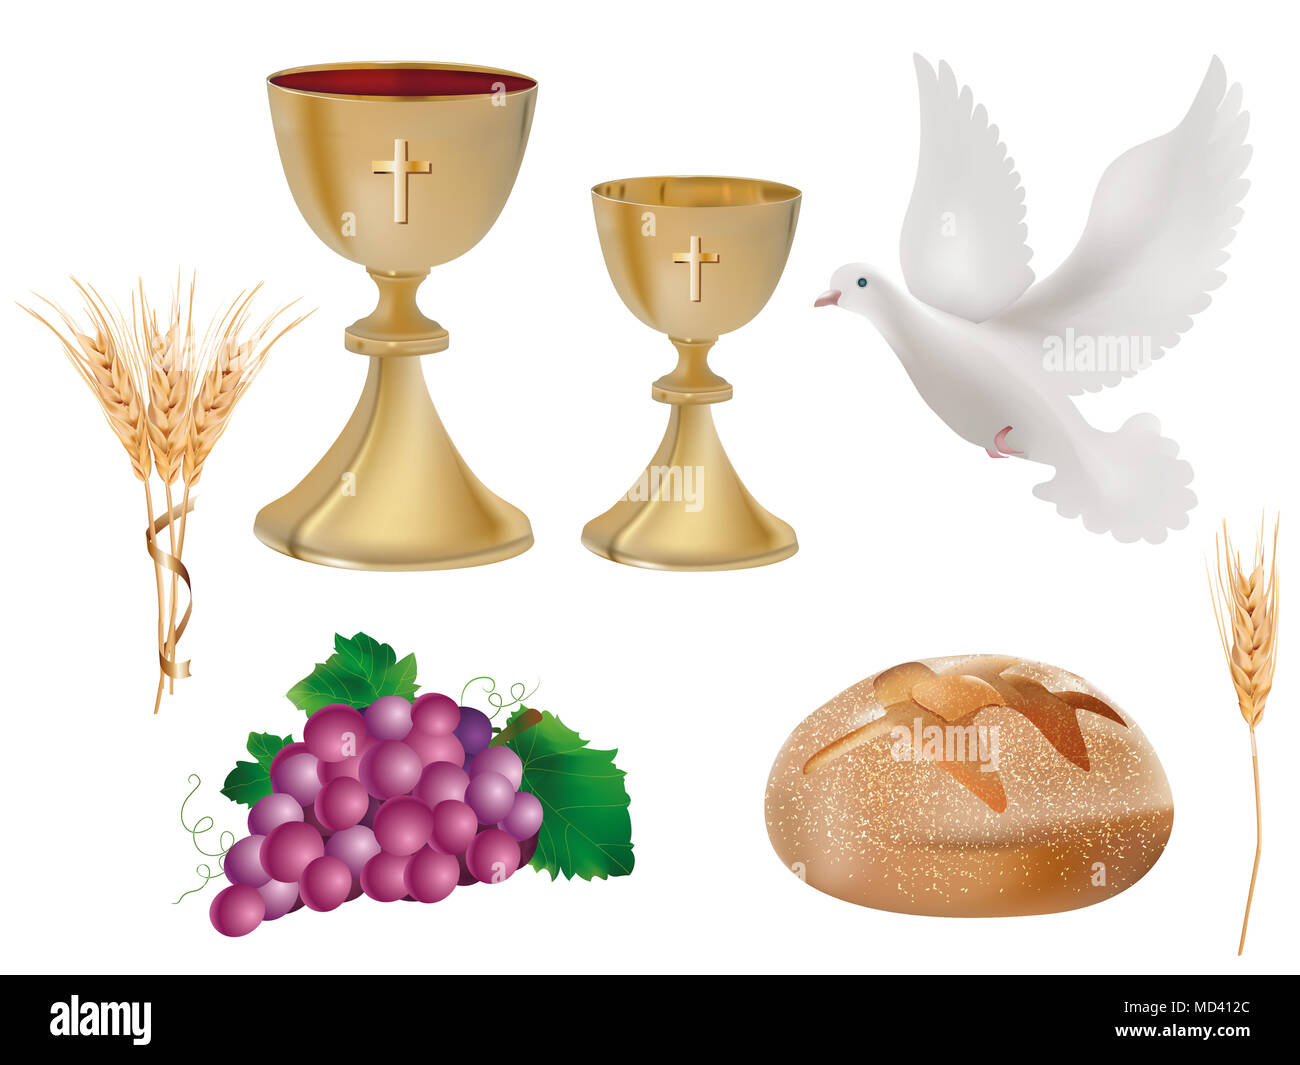 Simboli cristiani isolati: Calice dorato con vino, colomba, uva, pane, orecchio di grano. Segni cristiani. Ultima cena simboli.3D illustrazione realistica Foto Stock